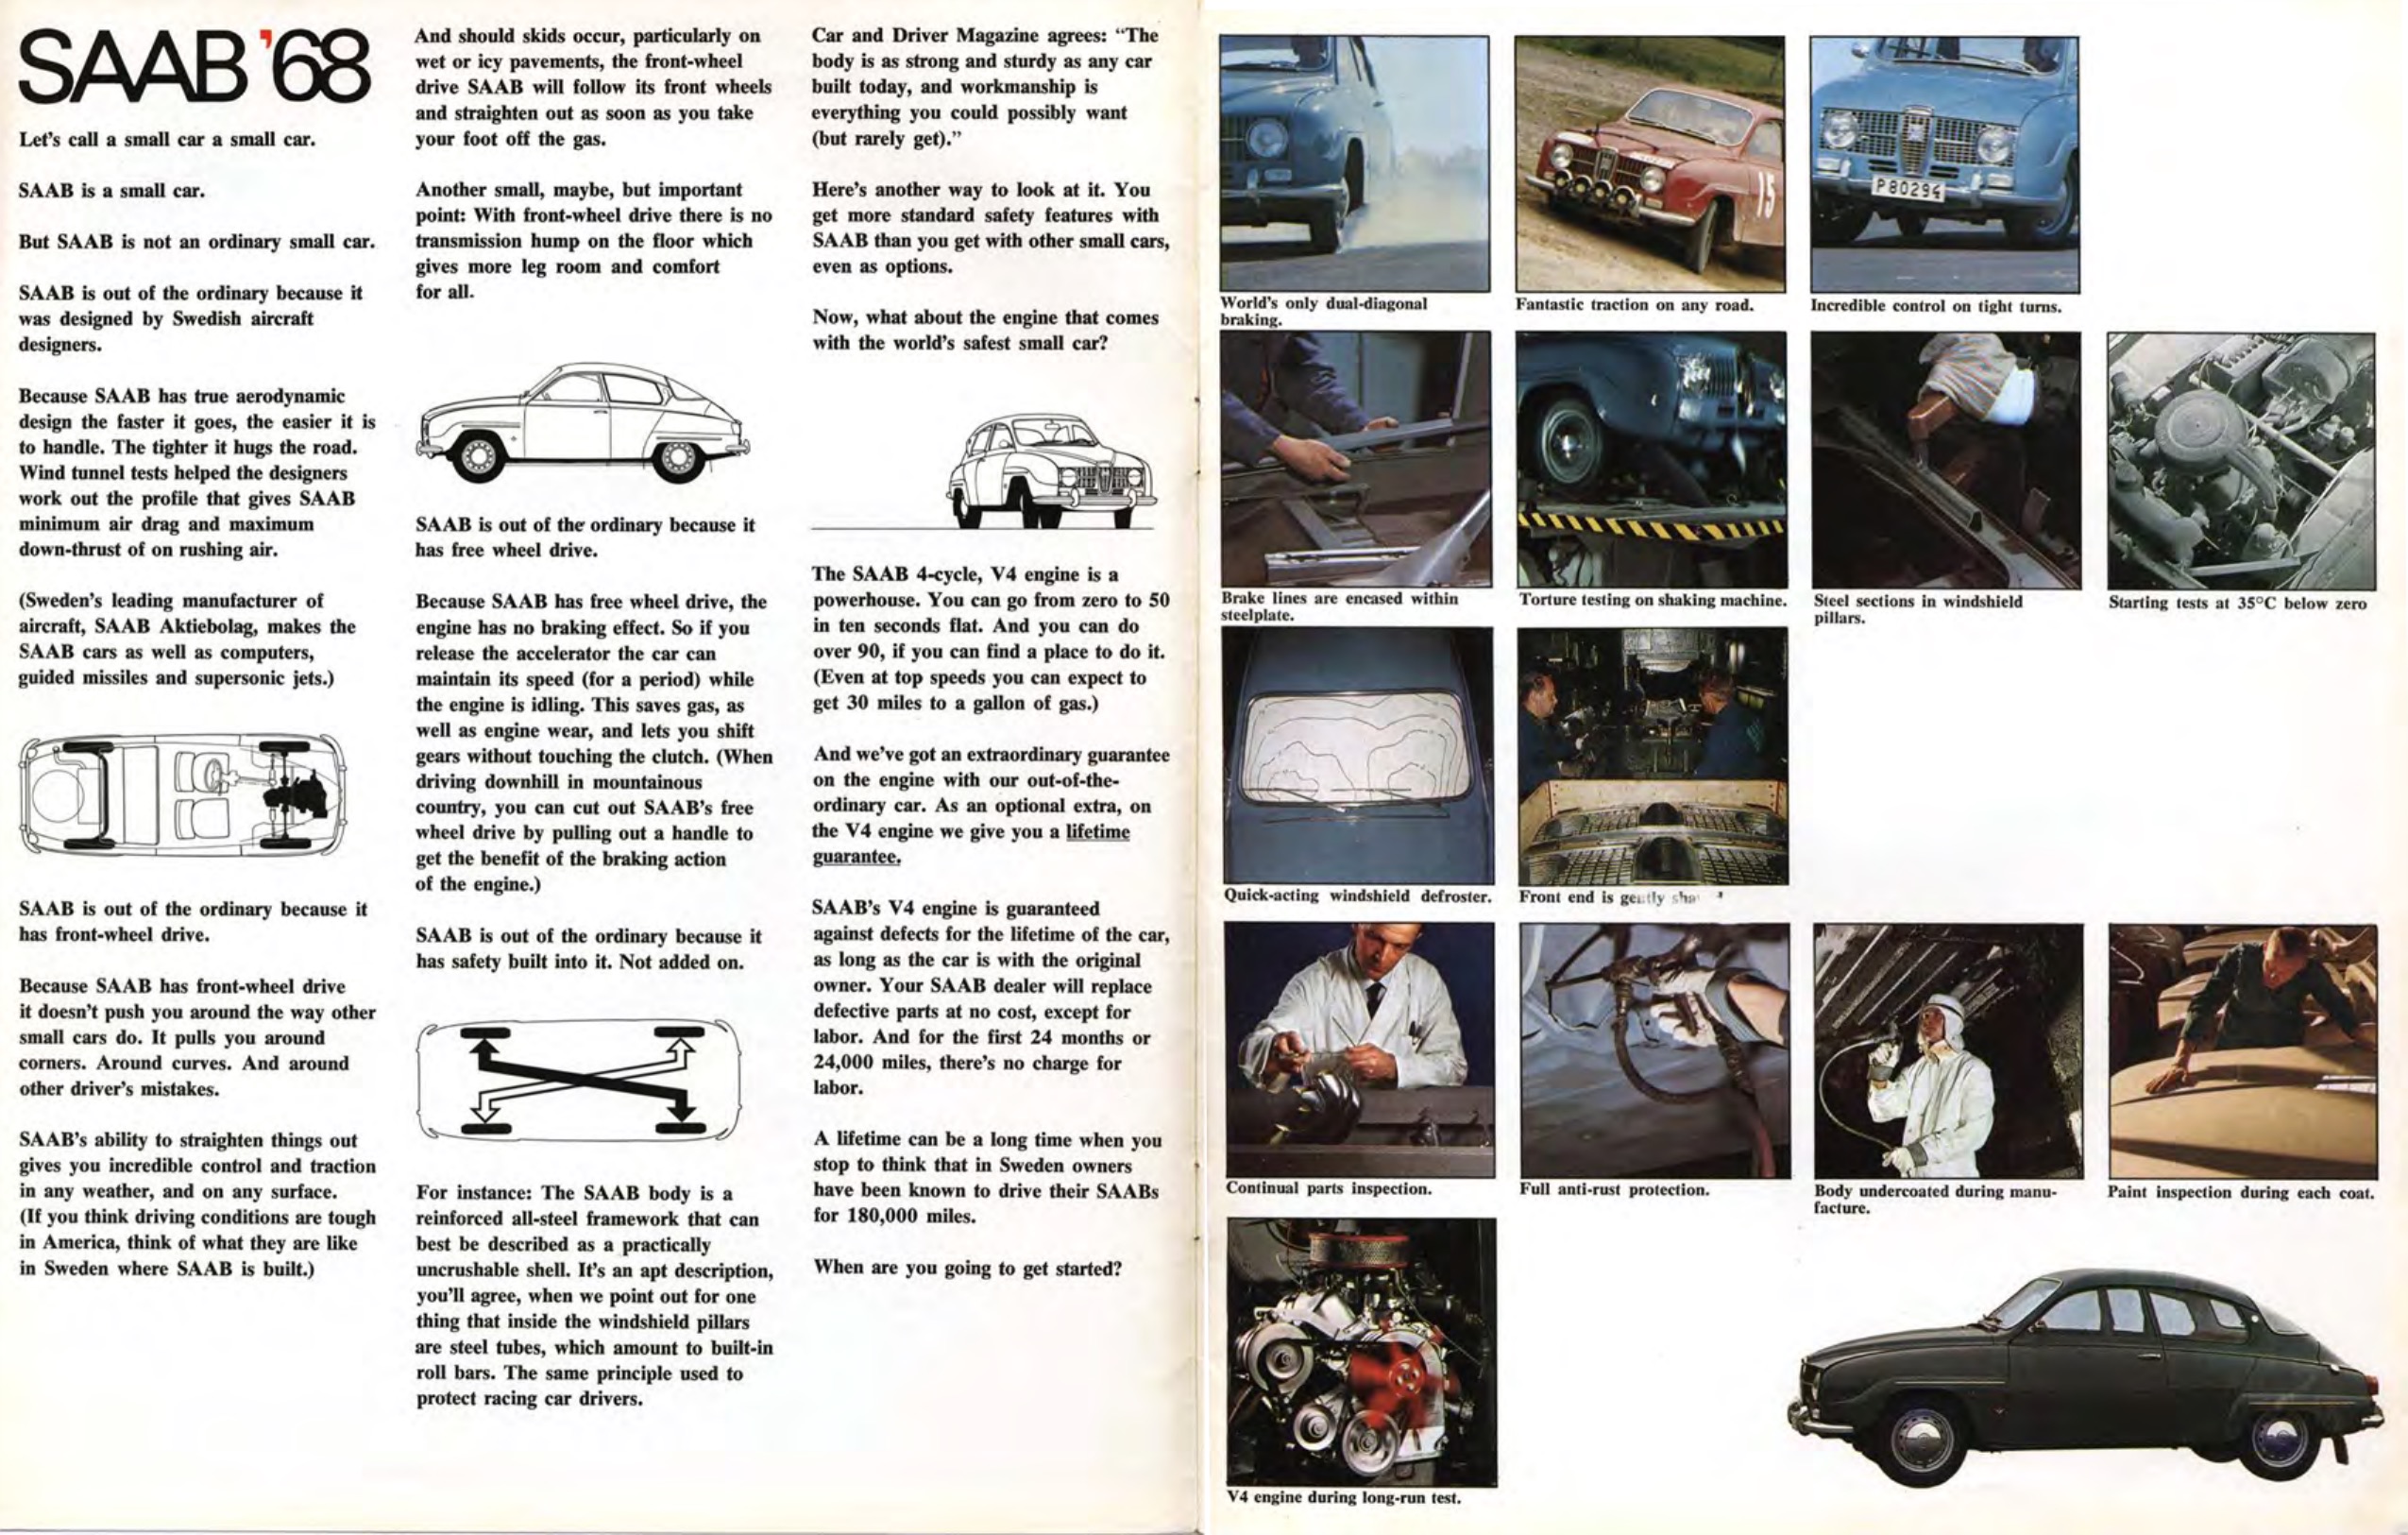 1968 SAAB Full-Line Brochure Page 5